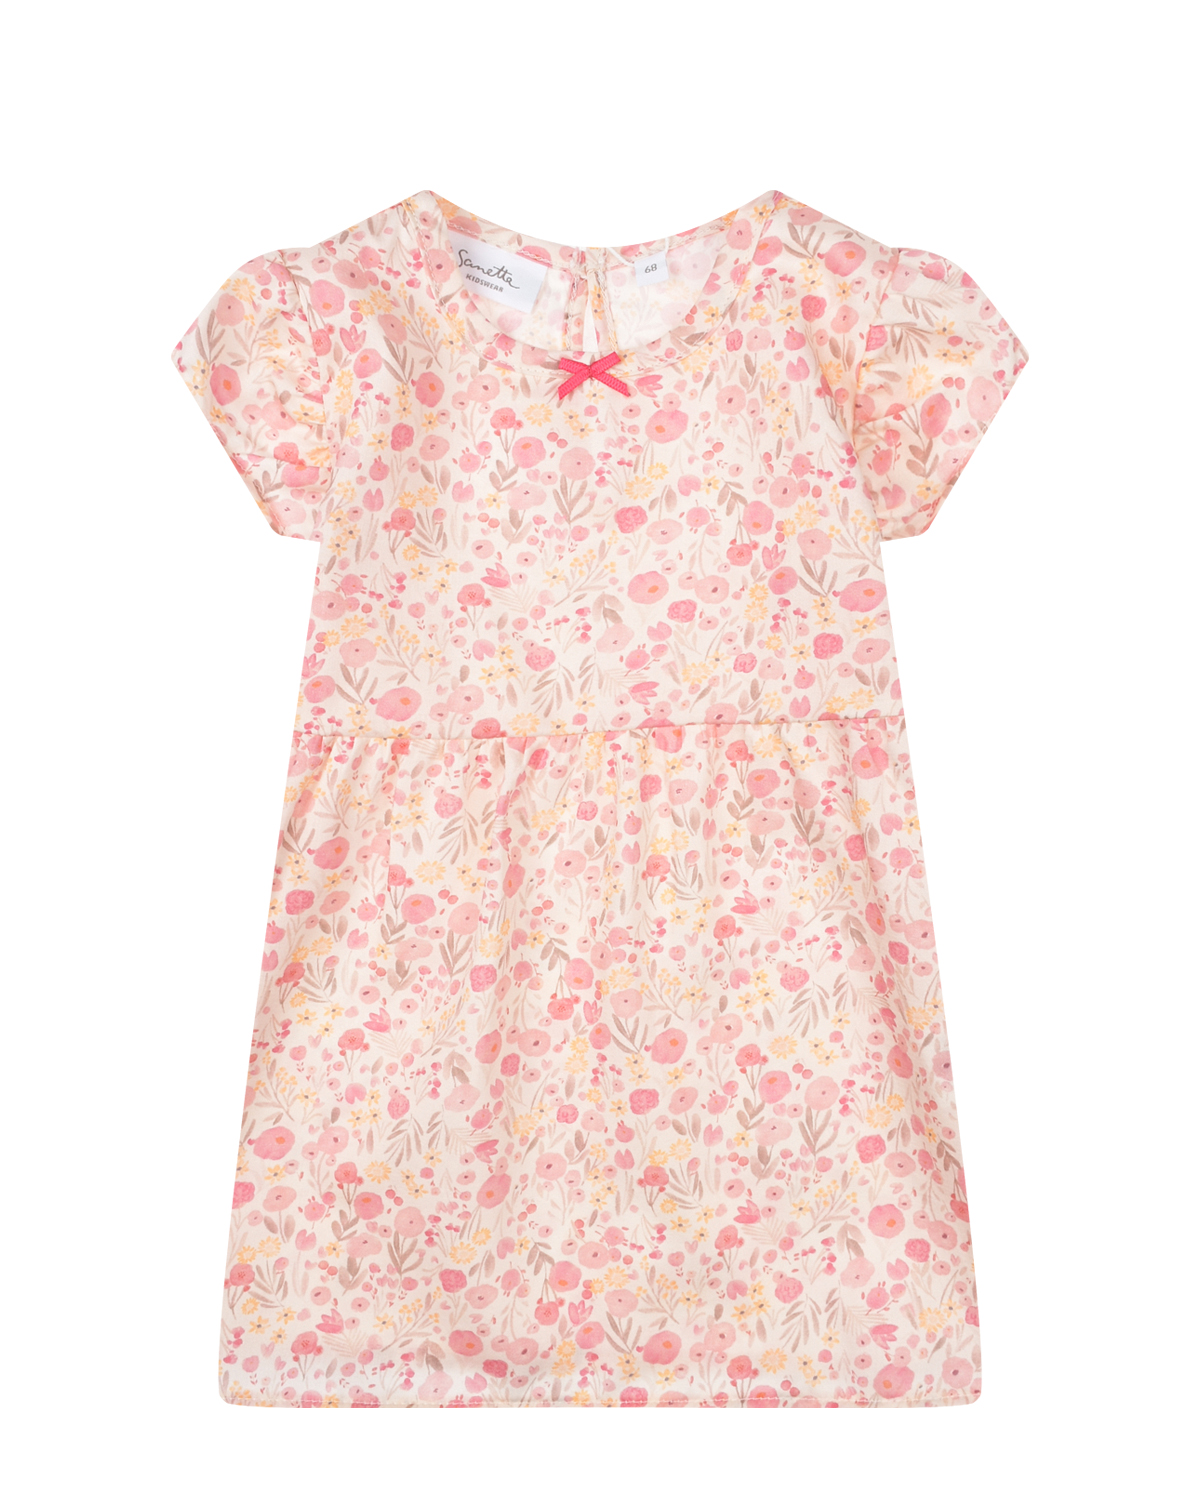 Розовое платье с цветочным принтом Sanetta Kidswear розовое многослойное платье gulliver 164